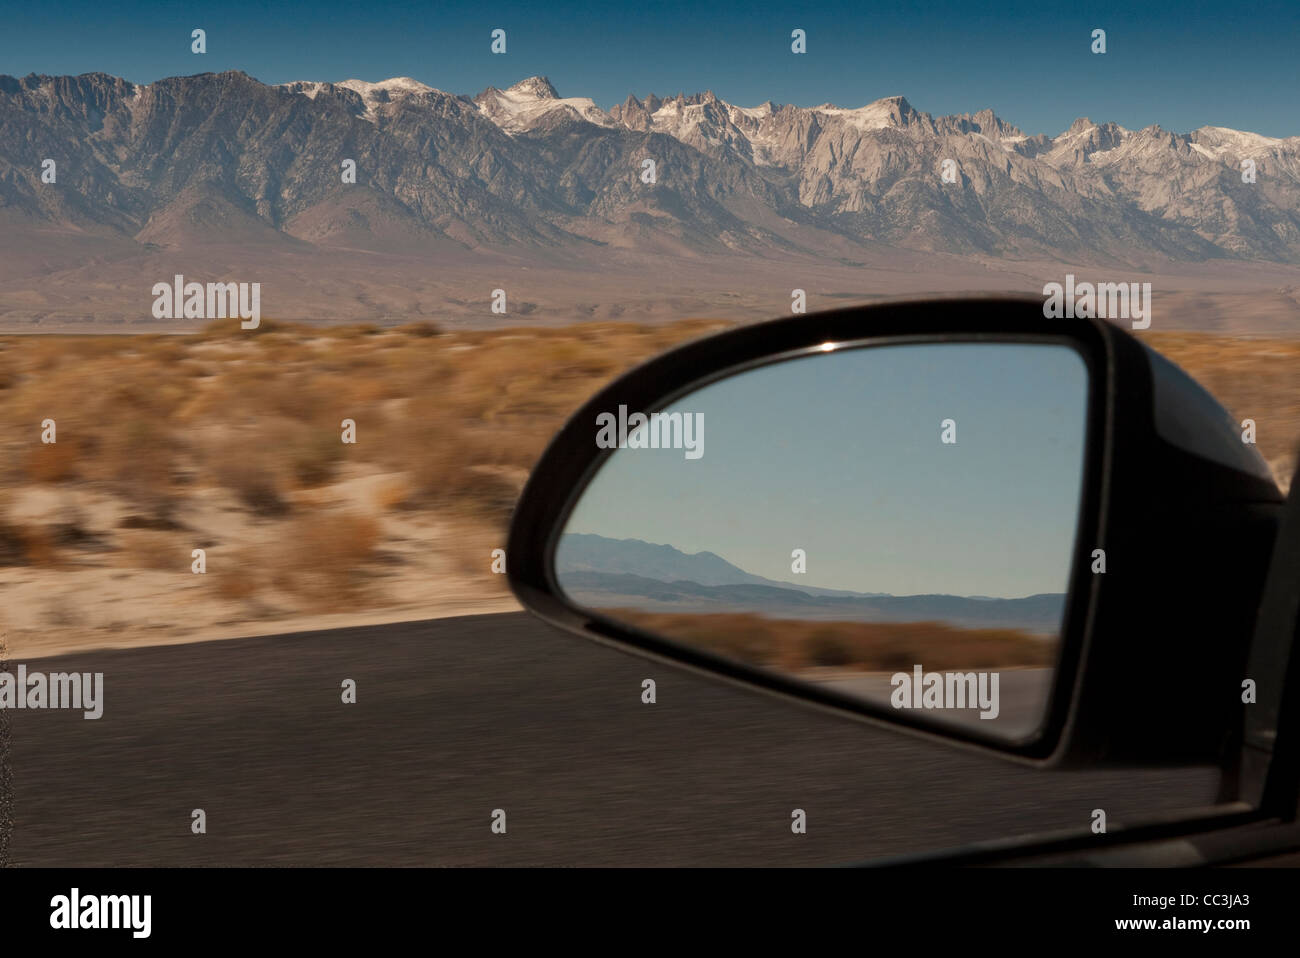 La réflexion en miroir de voiture la conduite à travers le désert près de Lone Pine en Californie. Banque D'Images